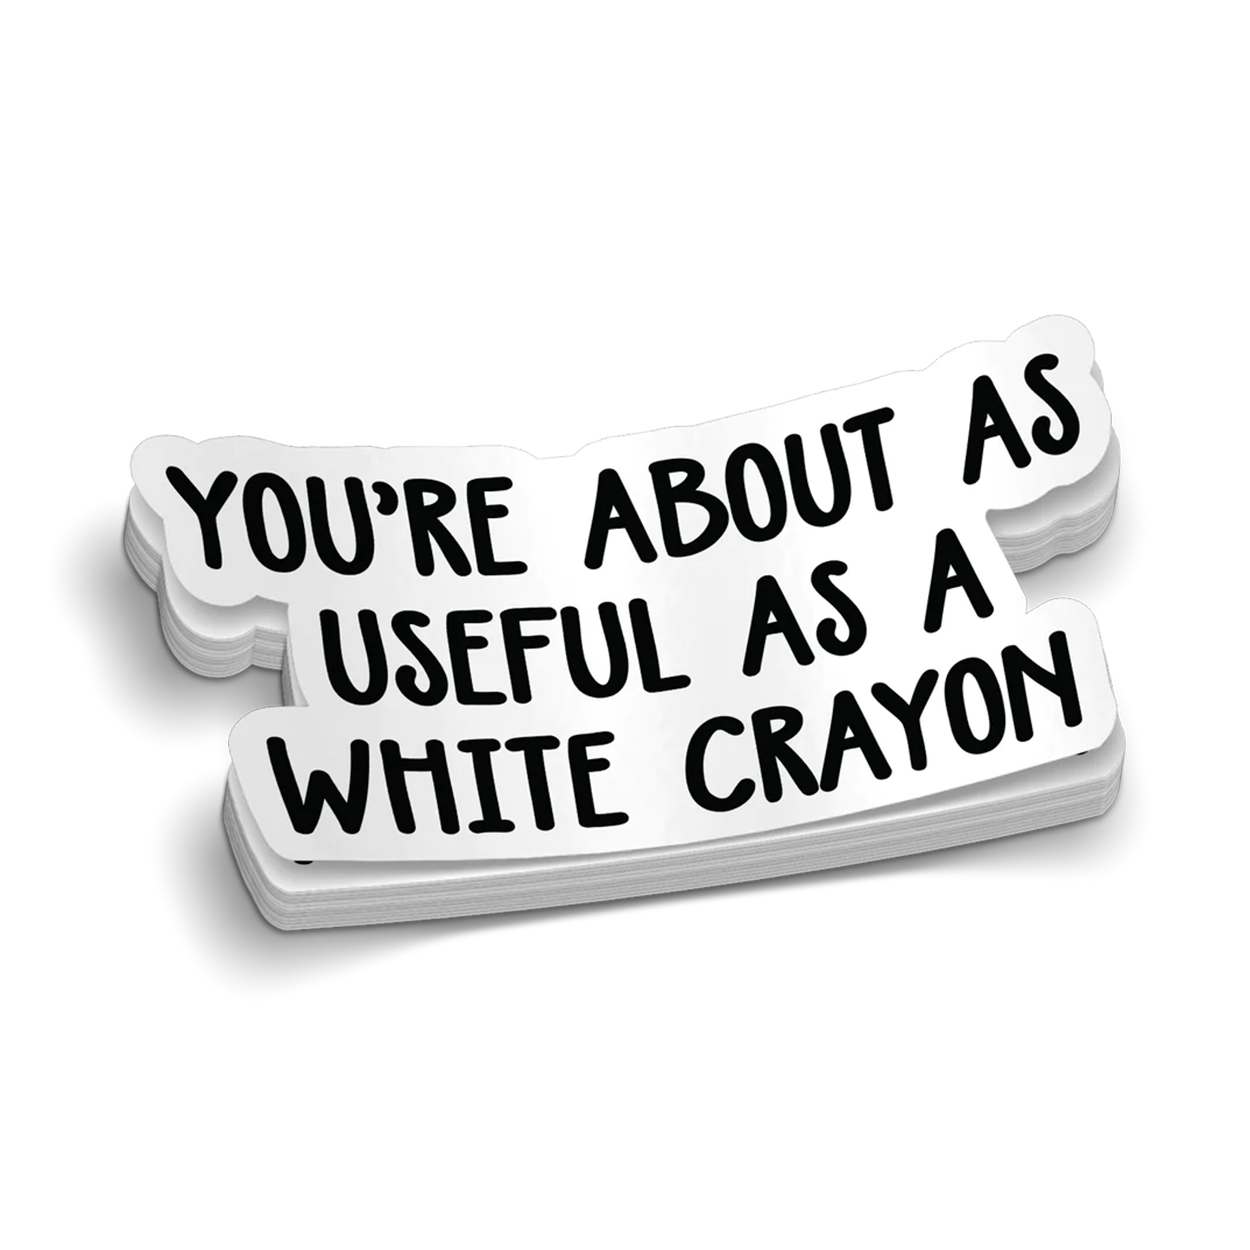 White Crayon - Hard Hat Sticker